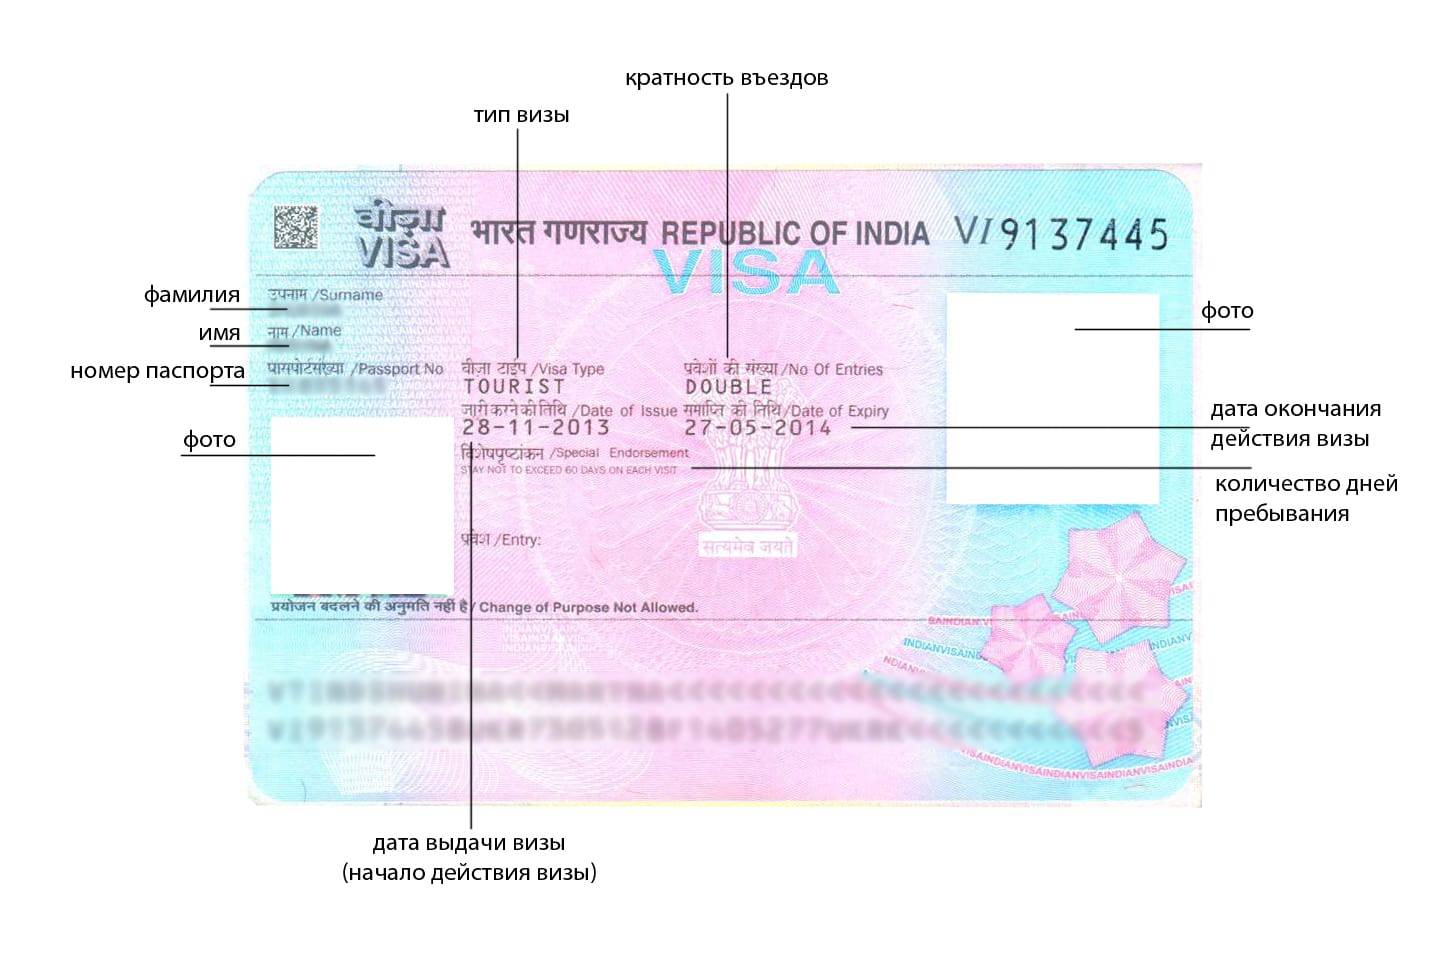 Подать заявку на визу в индию онлайн, форму заявки